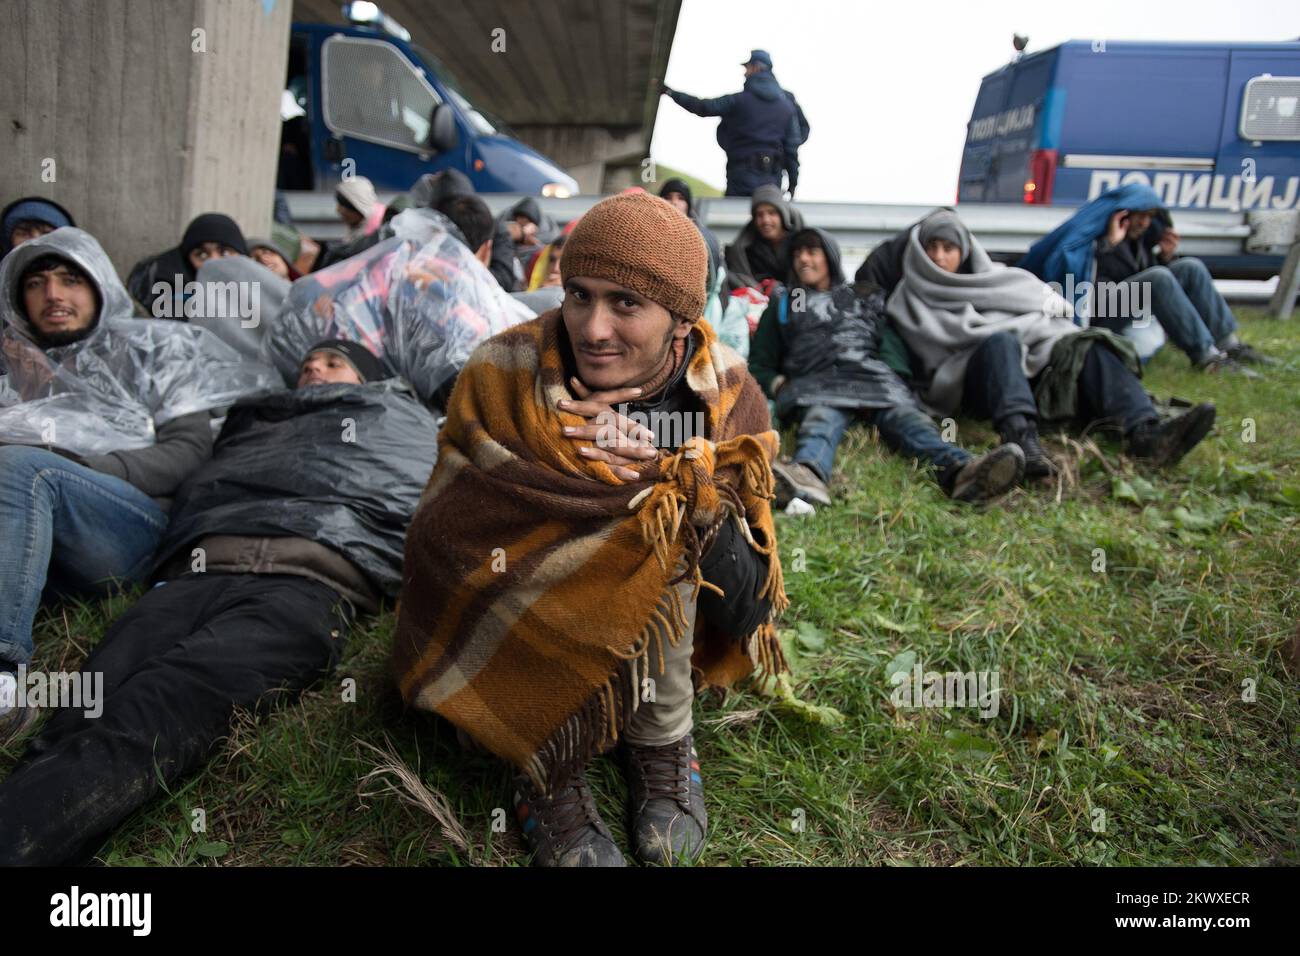 12.11.2016., Belgrad, Serbien - Eine Gruppe von mehr als 100 Migranten, überwiegend aus Afghanistan und Pakistan, ging zu Fuß von Belgrad nach Kroatien, und sie befinden sich derzeit auf der E-70 in der Nähe von Pecinac. Foto: Srdjan Ilic/PIXSELL Stockfoto